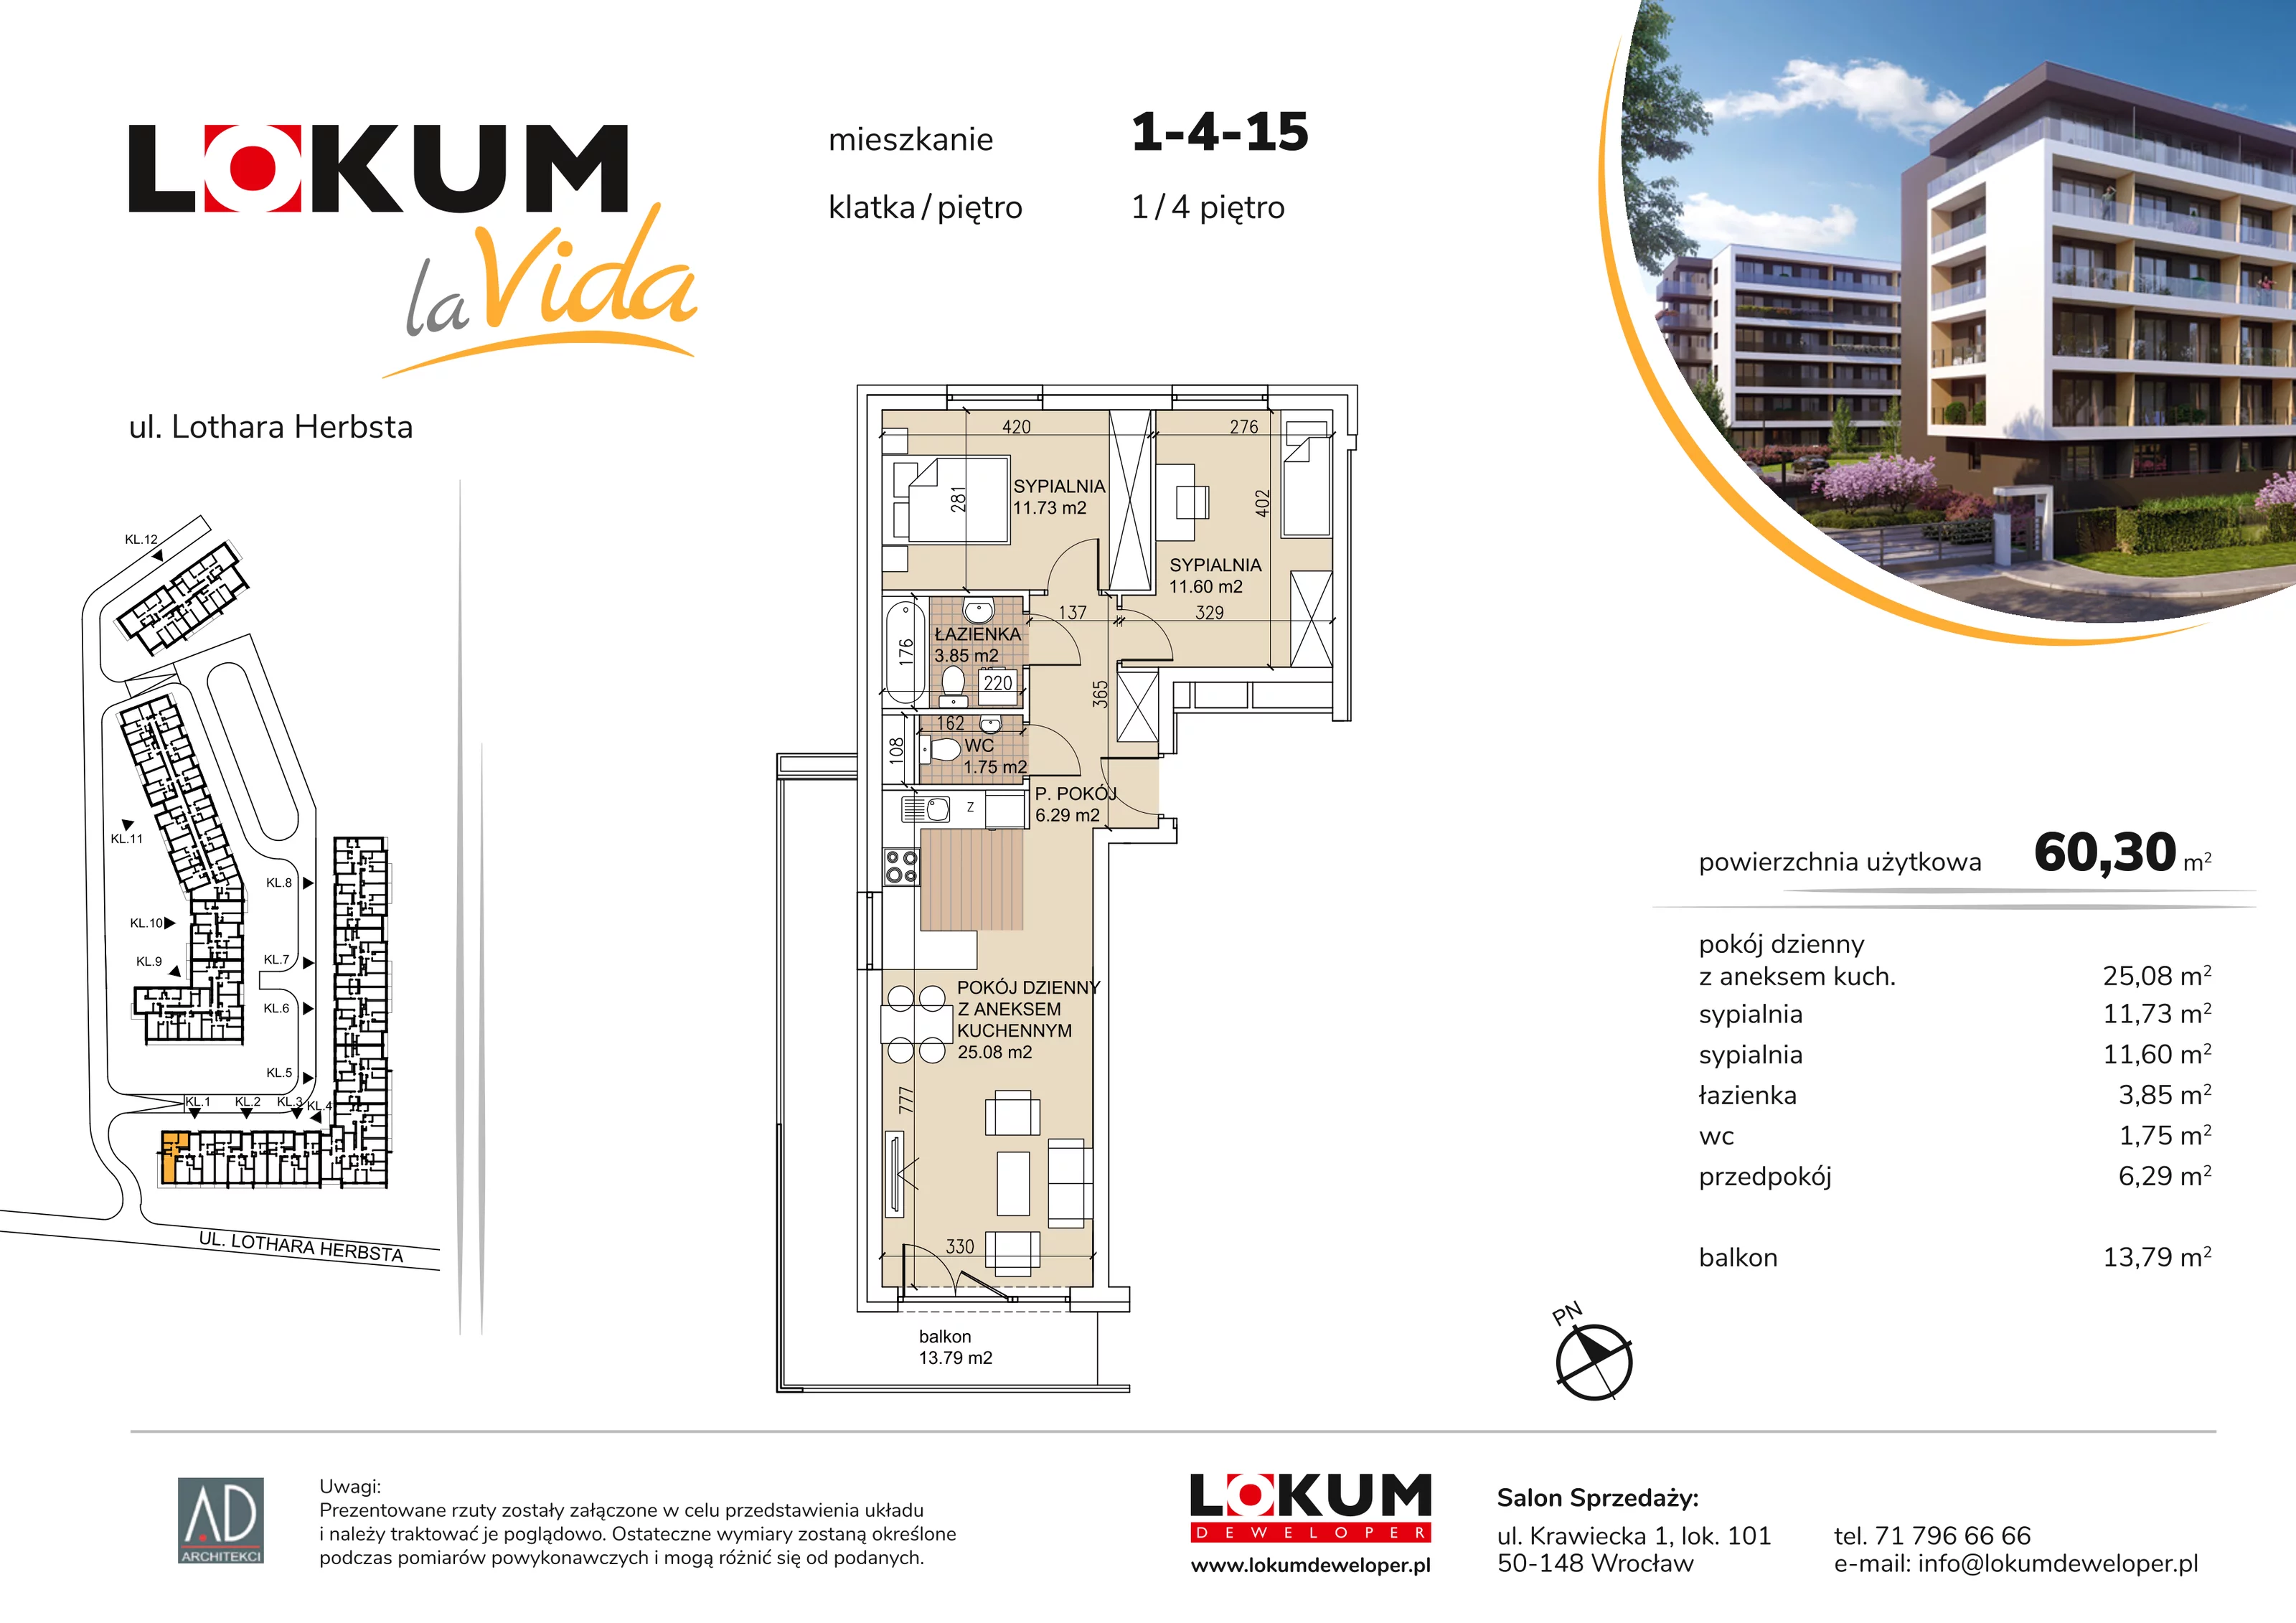 Mieszkanie 60,30 m², piętro 4, oferta nr 1-4-15, Lokum la Vida, Wrocław, Sołtysowice, ul. Lothara Herbsta